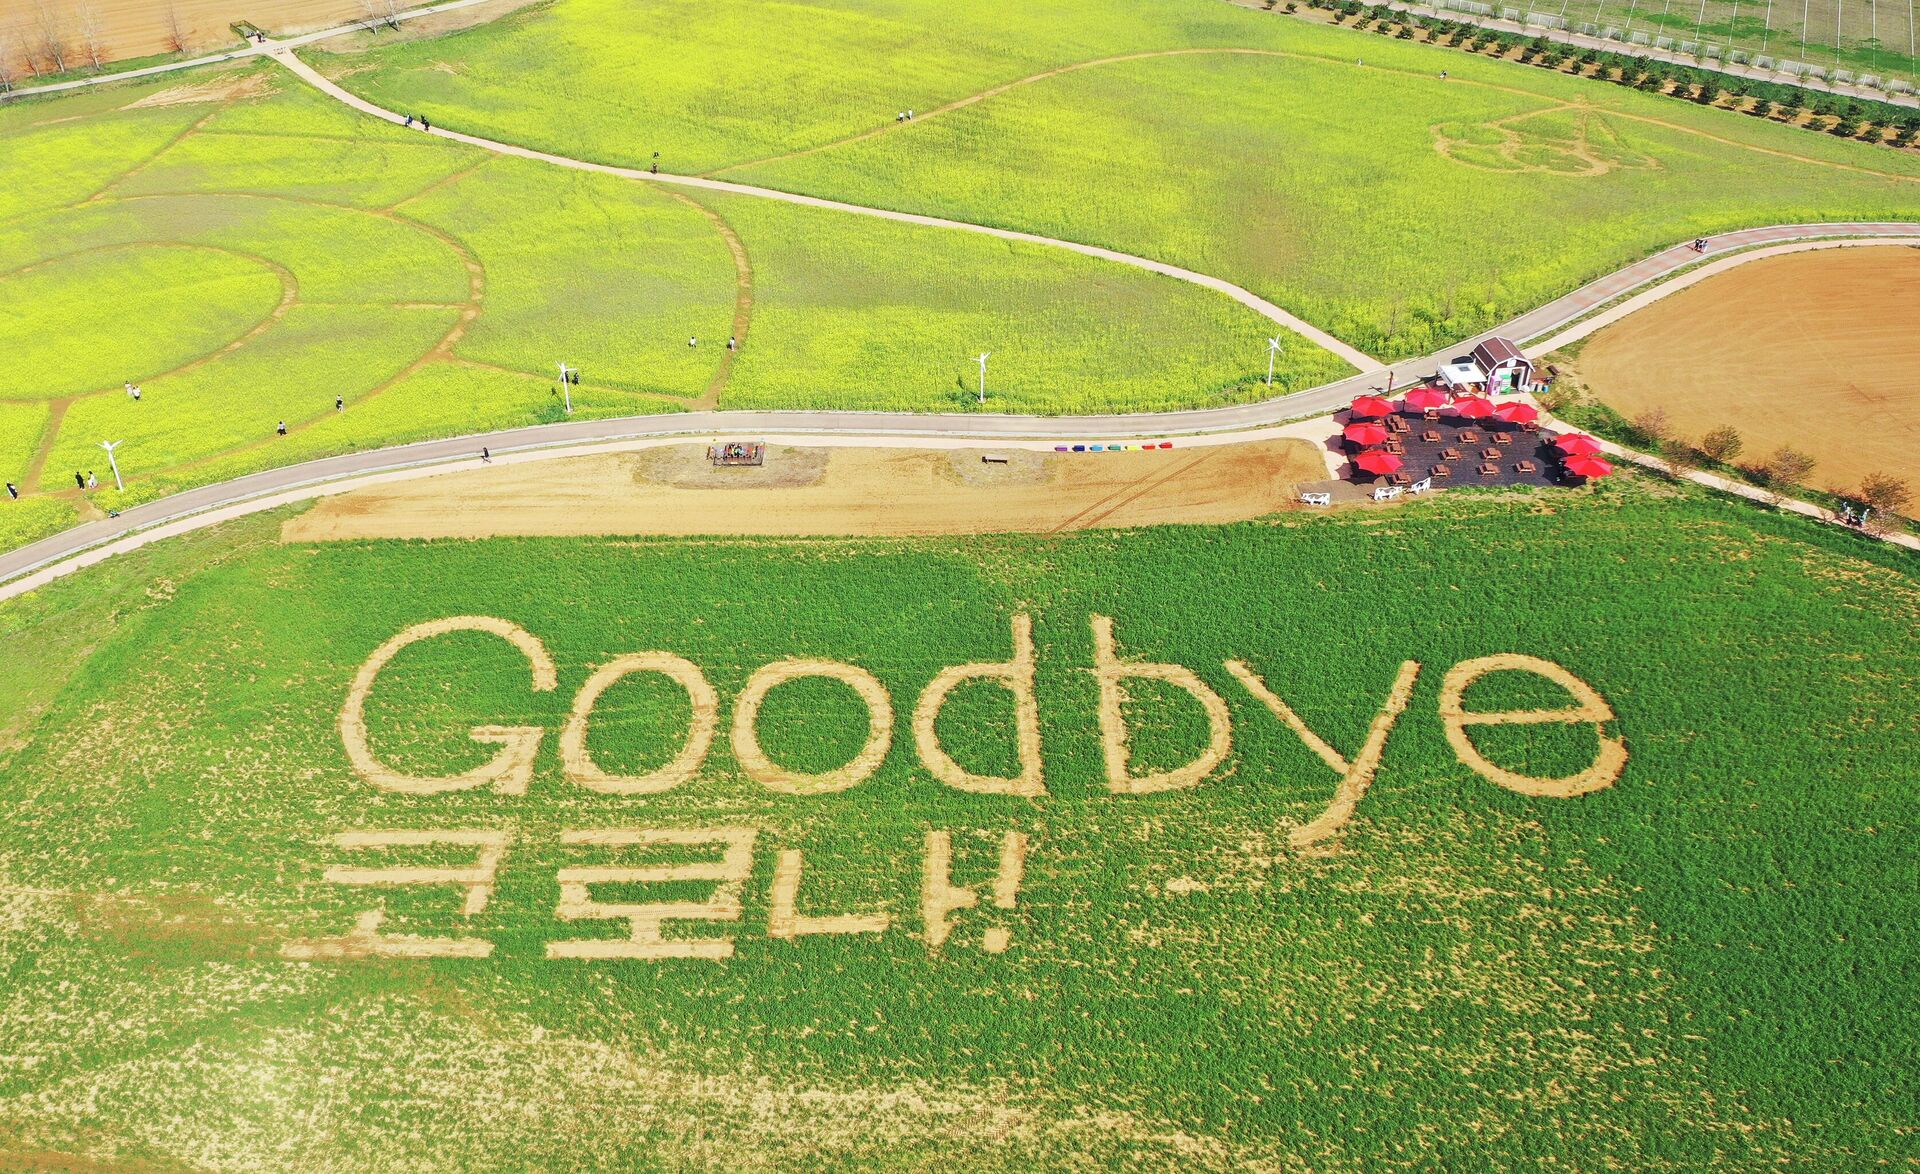 Надпись Goodbye coronavirus, выполненная в ознаменование отмены пандемических ограничений на поле в Ансоне, Южная Корея - Sputnik 日本, 1920, 18.04.2022